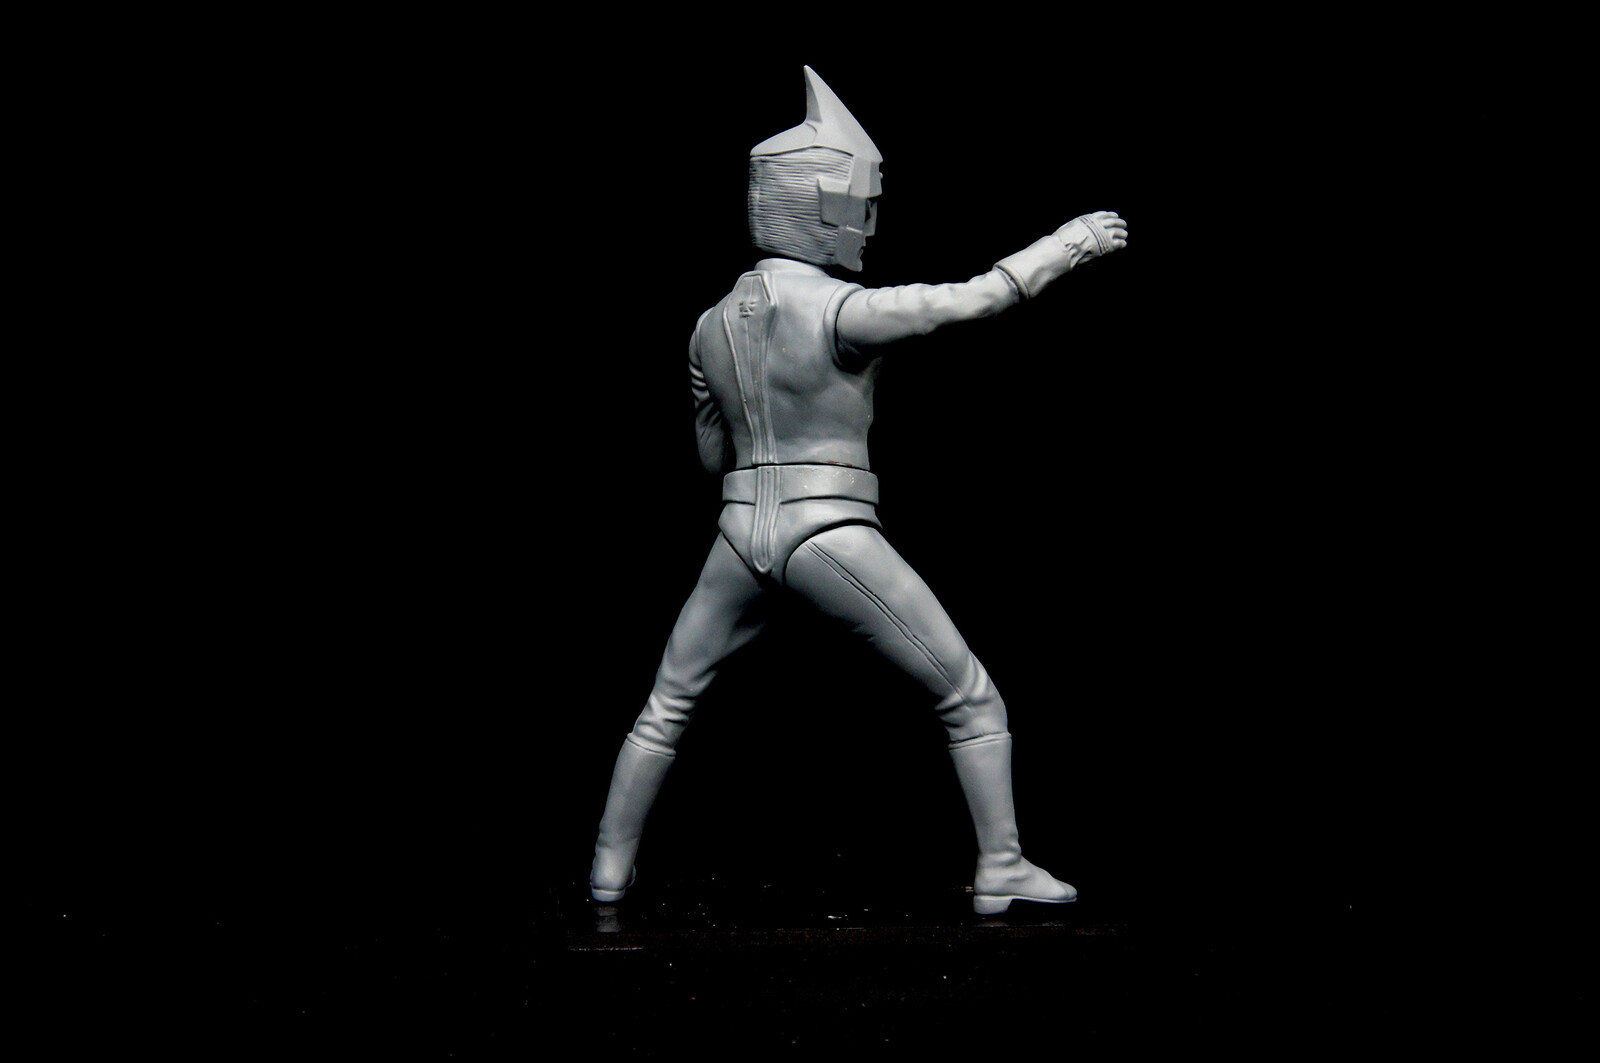 原型制作Robin Kwok: スペクトルマン 30 cm
original sculpt 30 cm Spectreman
https://www.solidart.club/